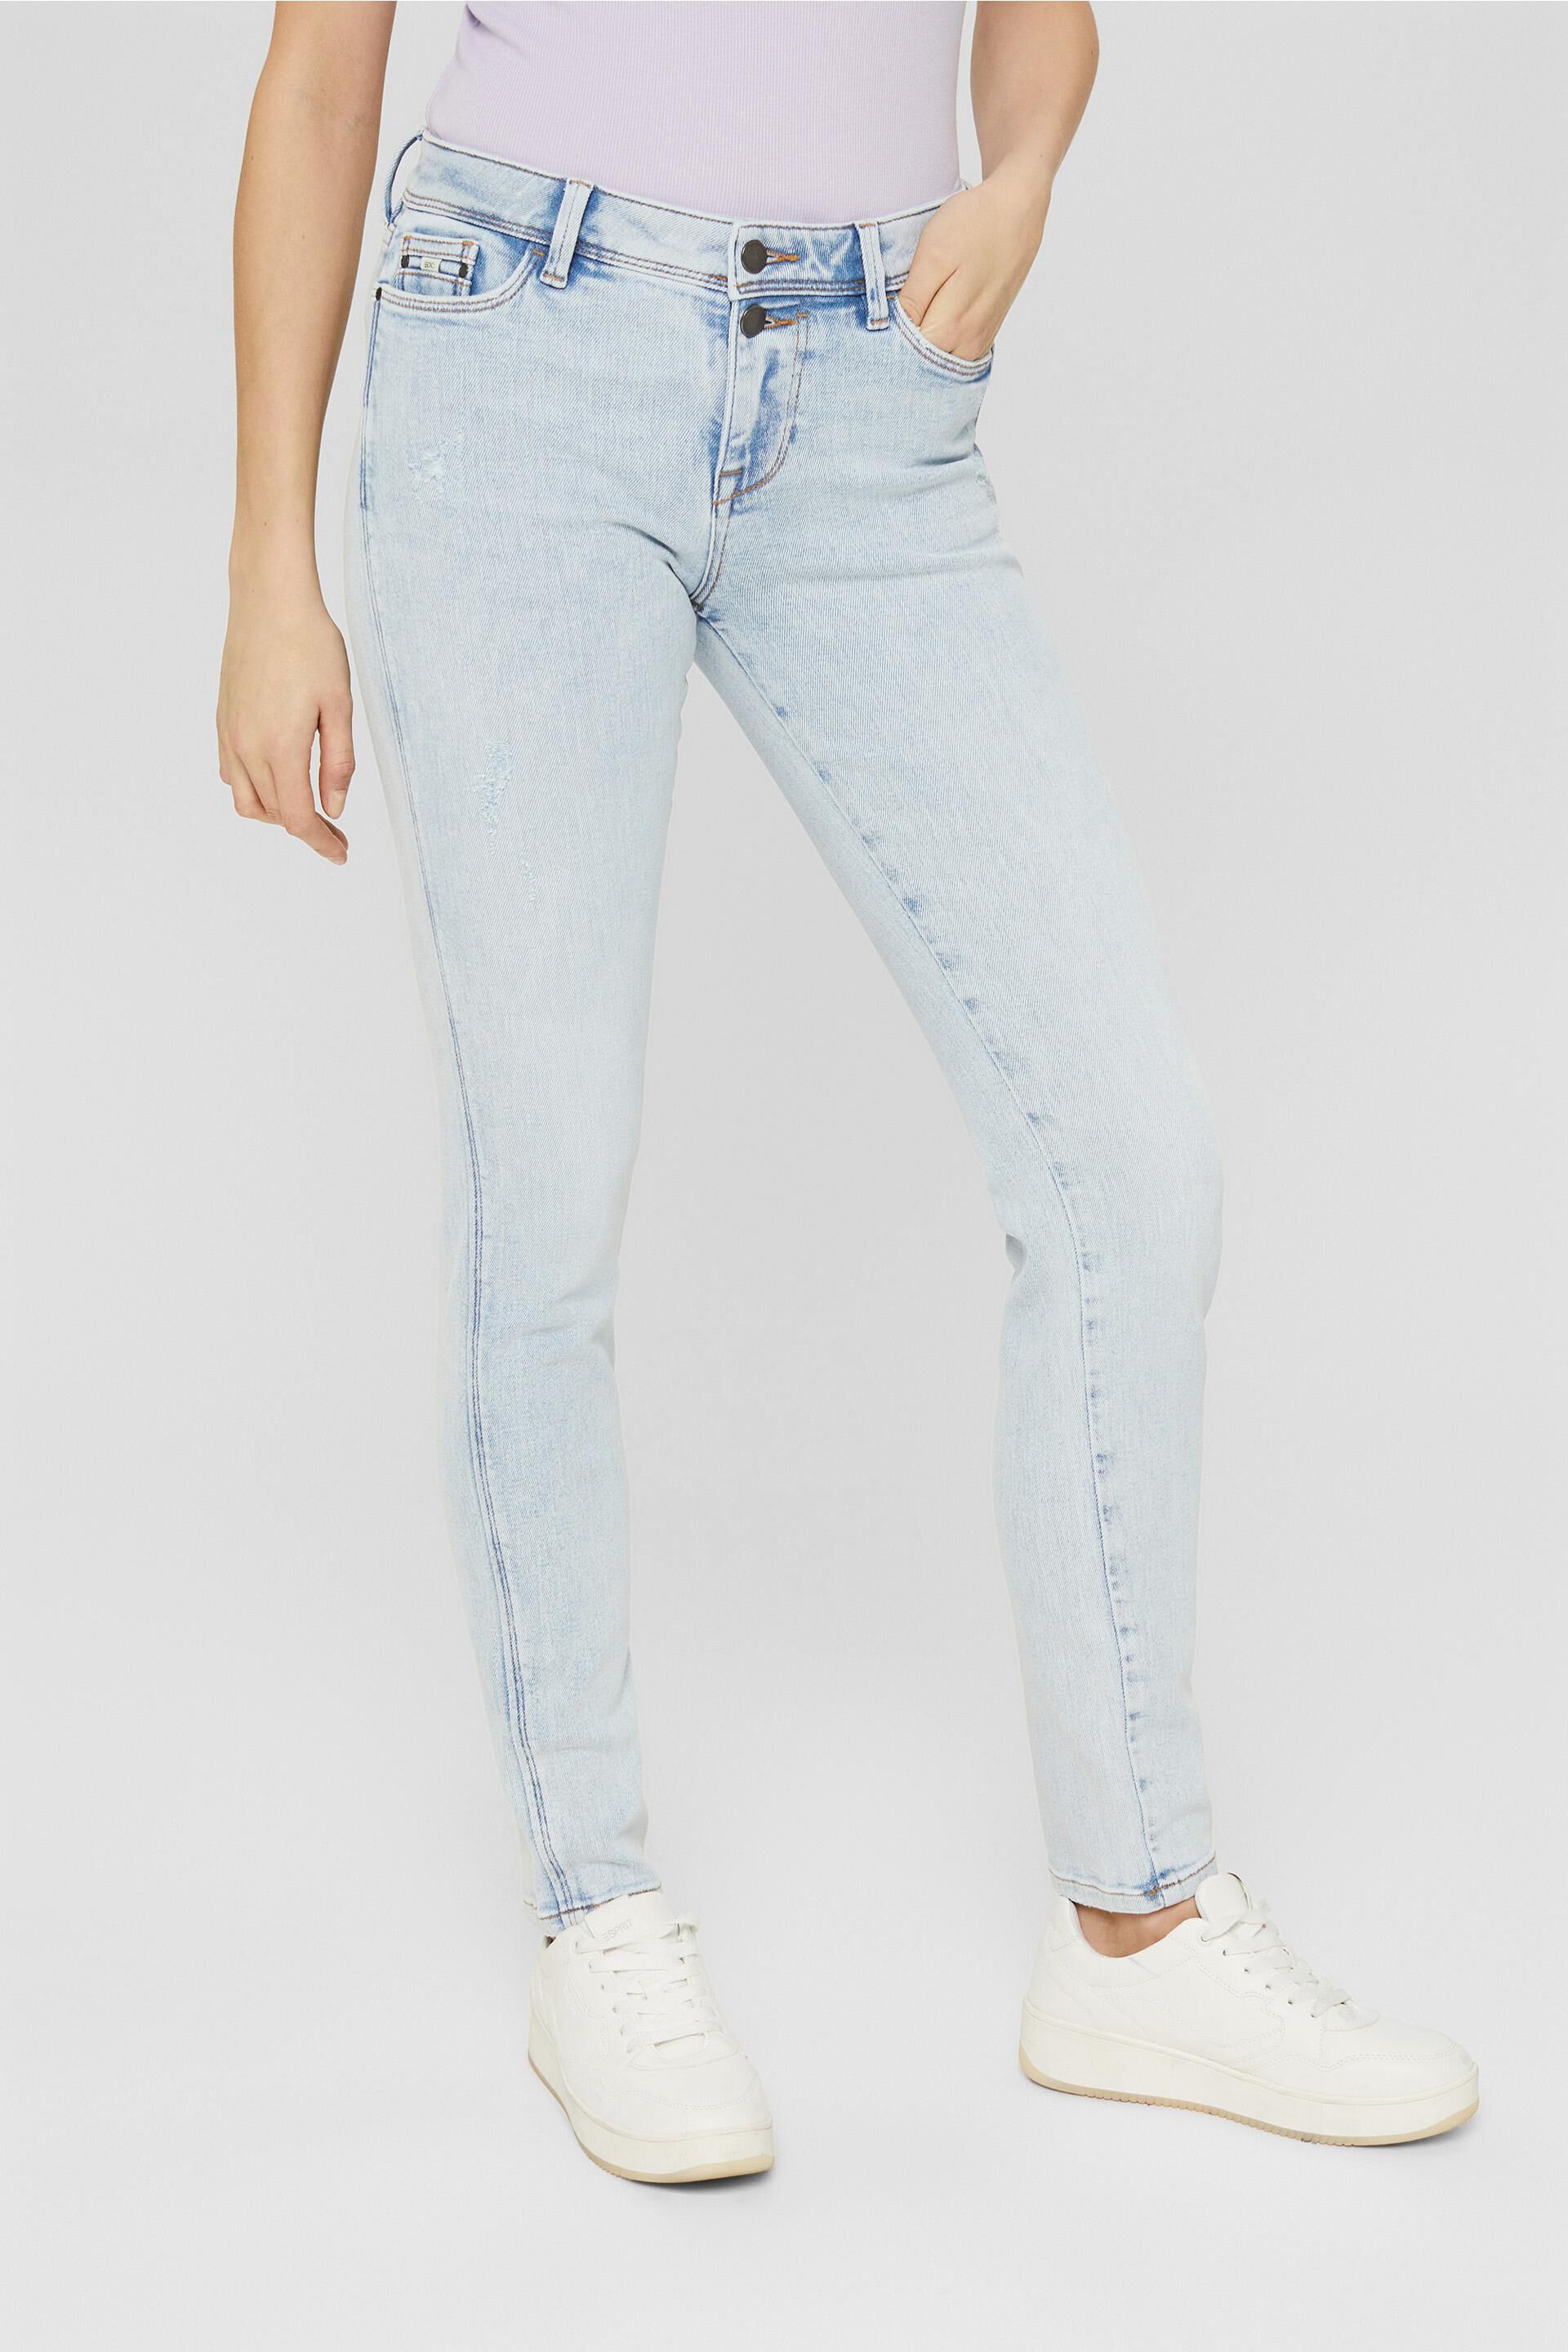 Mode Spijkerbroeken Stretch jeans M&S Stretch jeans blauw elegant 